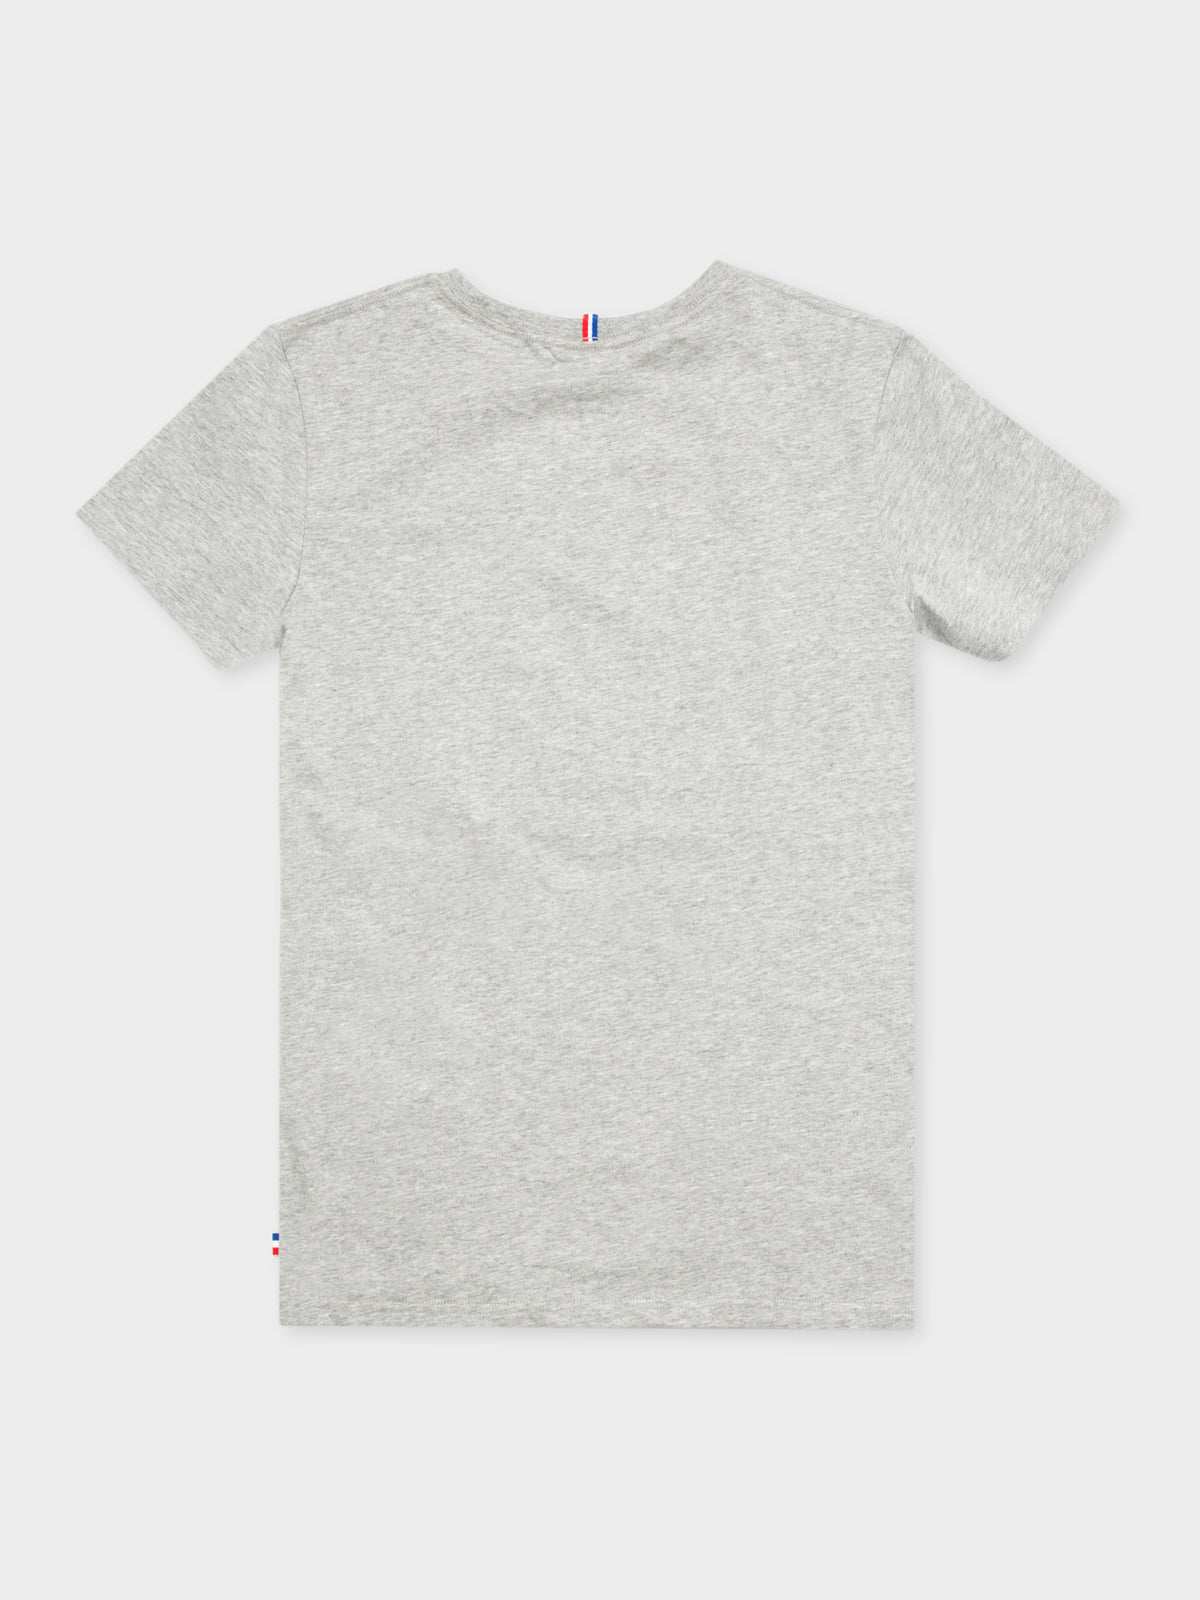 Raphael T-Shirt in Grey Marle